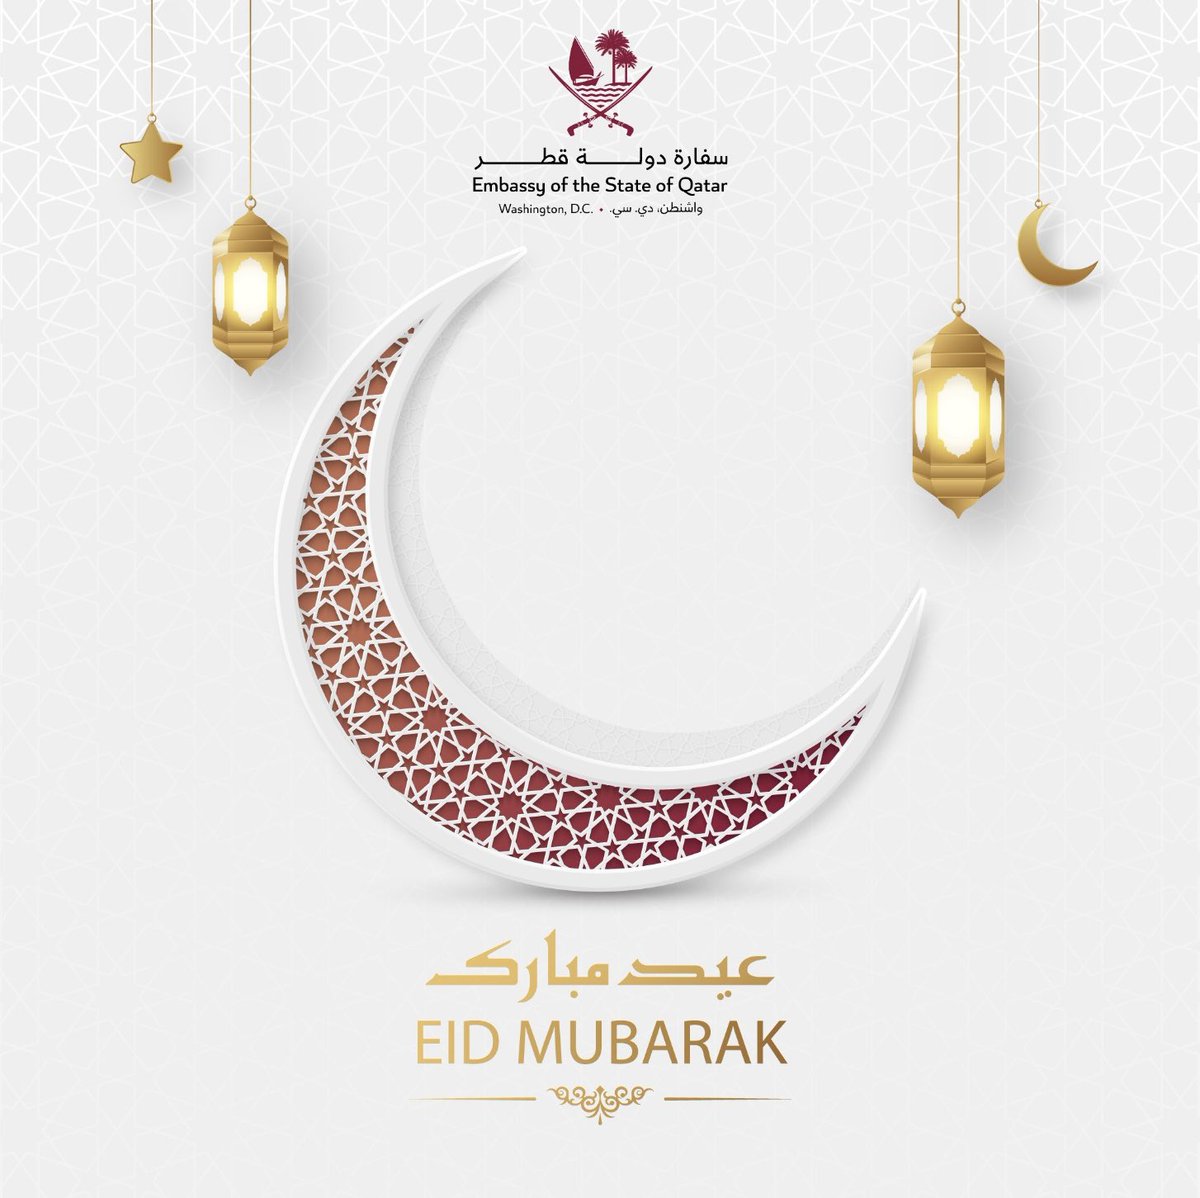 We wish you all a happy Eid Al-Fitr! #EidMubarak